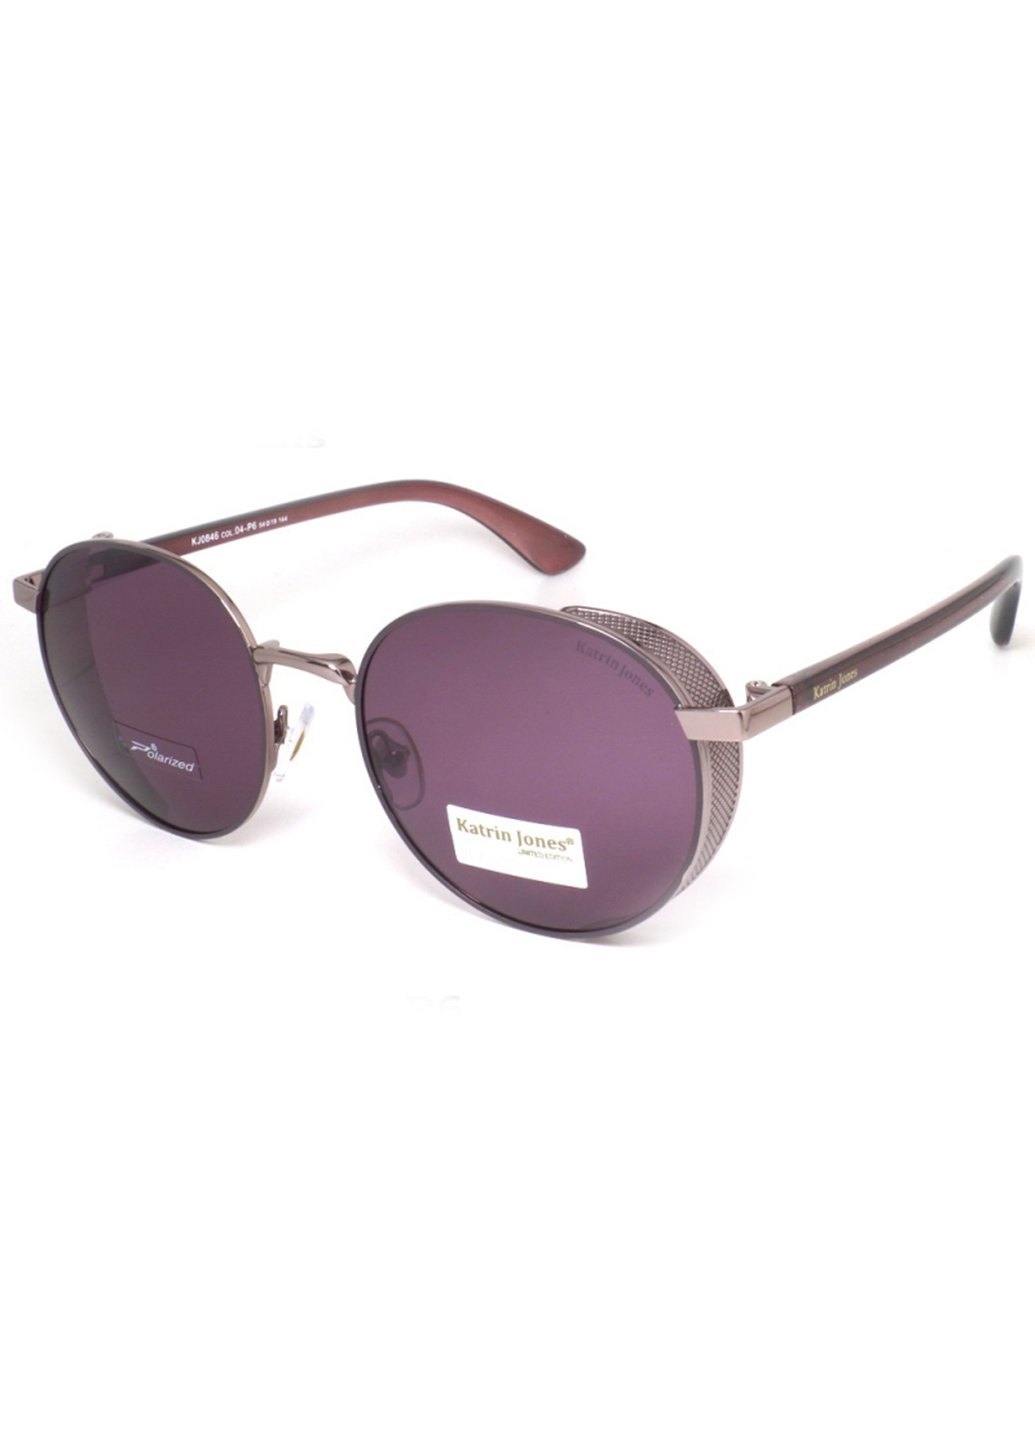 Купить Женские солнцезащитные очки Katrin Jones с поляризацией KJ0846 180002 - Фиолетовый в интернет-магазине